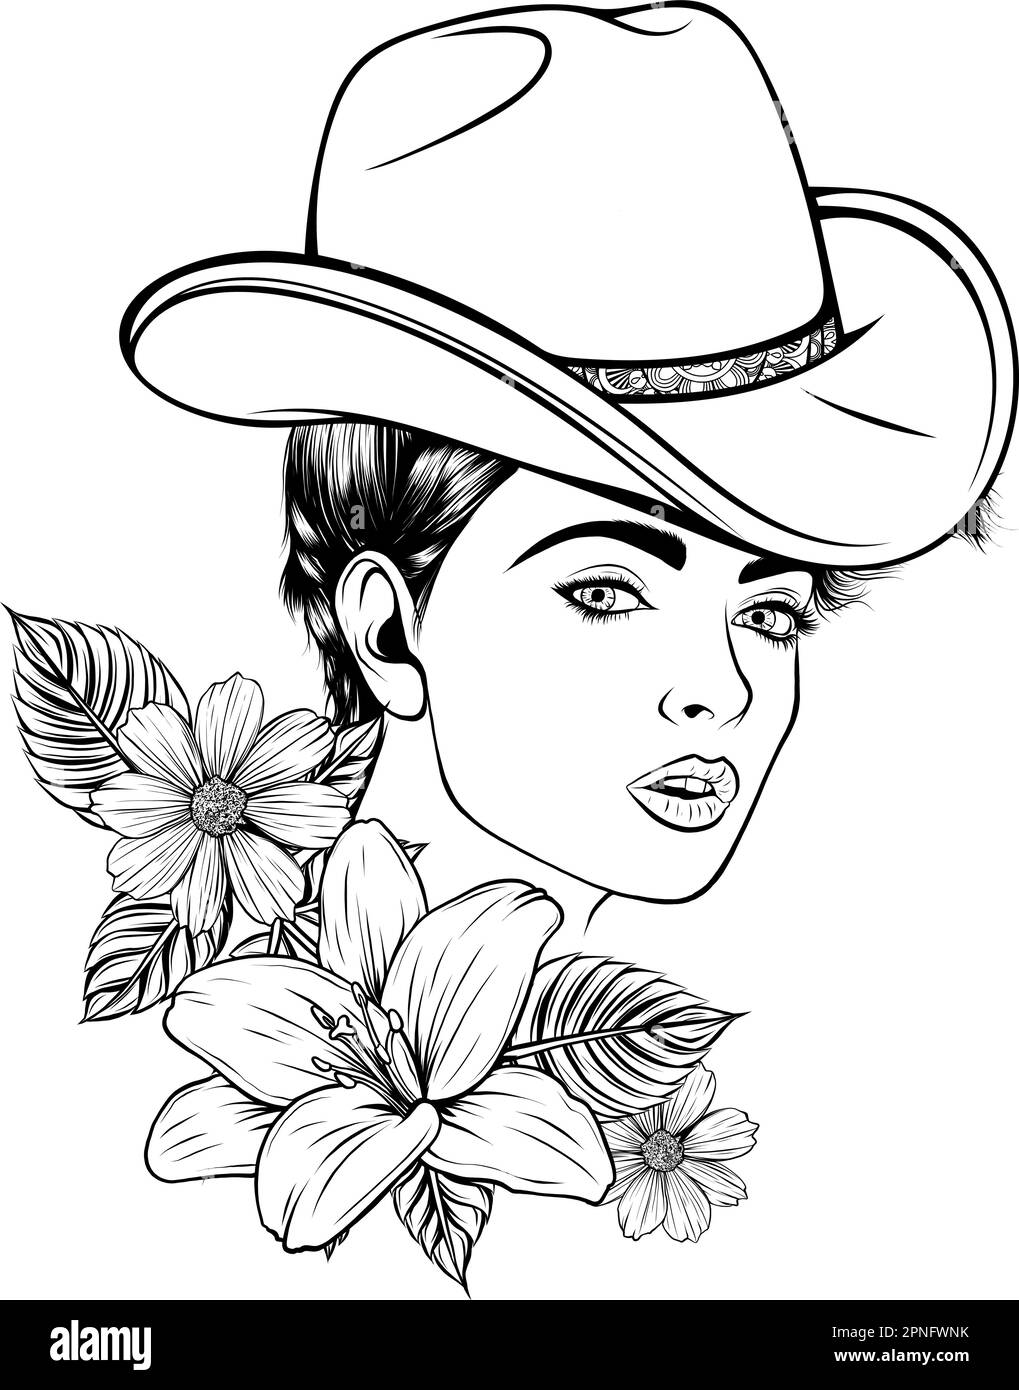 Junge Frau mit einem Cowboyhut. Handgezeichnete Vektordarstellung im gravierten Cowgirl Vintage-Stil, isoliert auf weißem Hintergrund. Stilisiertes Schwarz-Weiß Stock Vektor